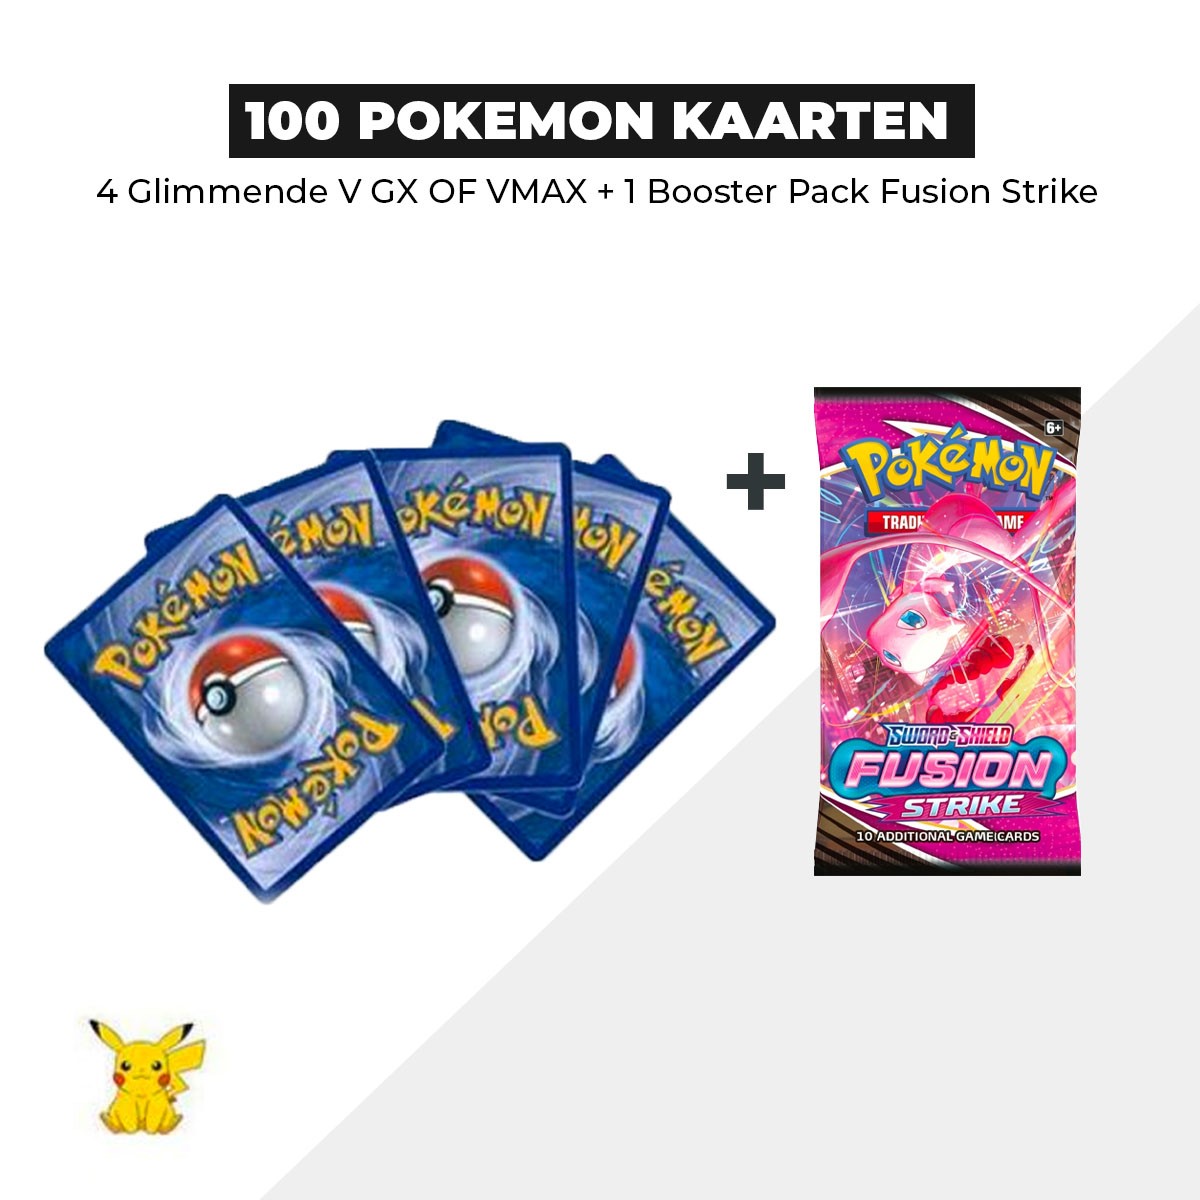 100 Pokémon Kaarten Bundel + 1 Fusion strike Booster pack